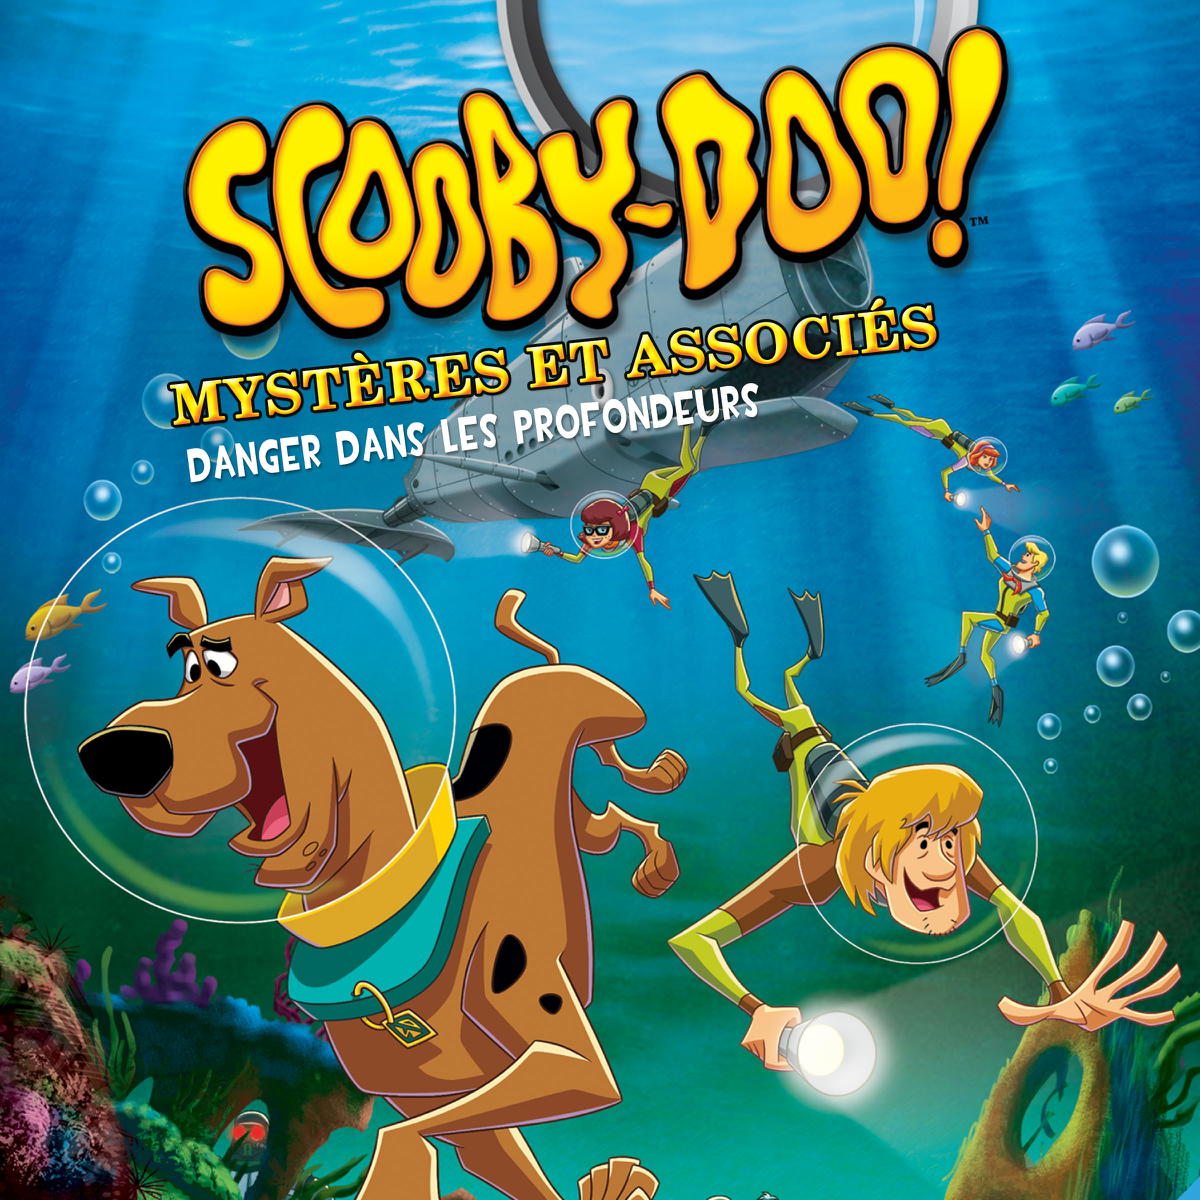 Scooby-doo, Mystères associés, Saison 2, Partie 1 - Saison TV - iTunes  France